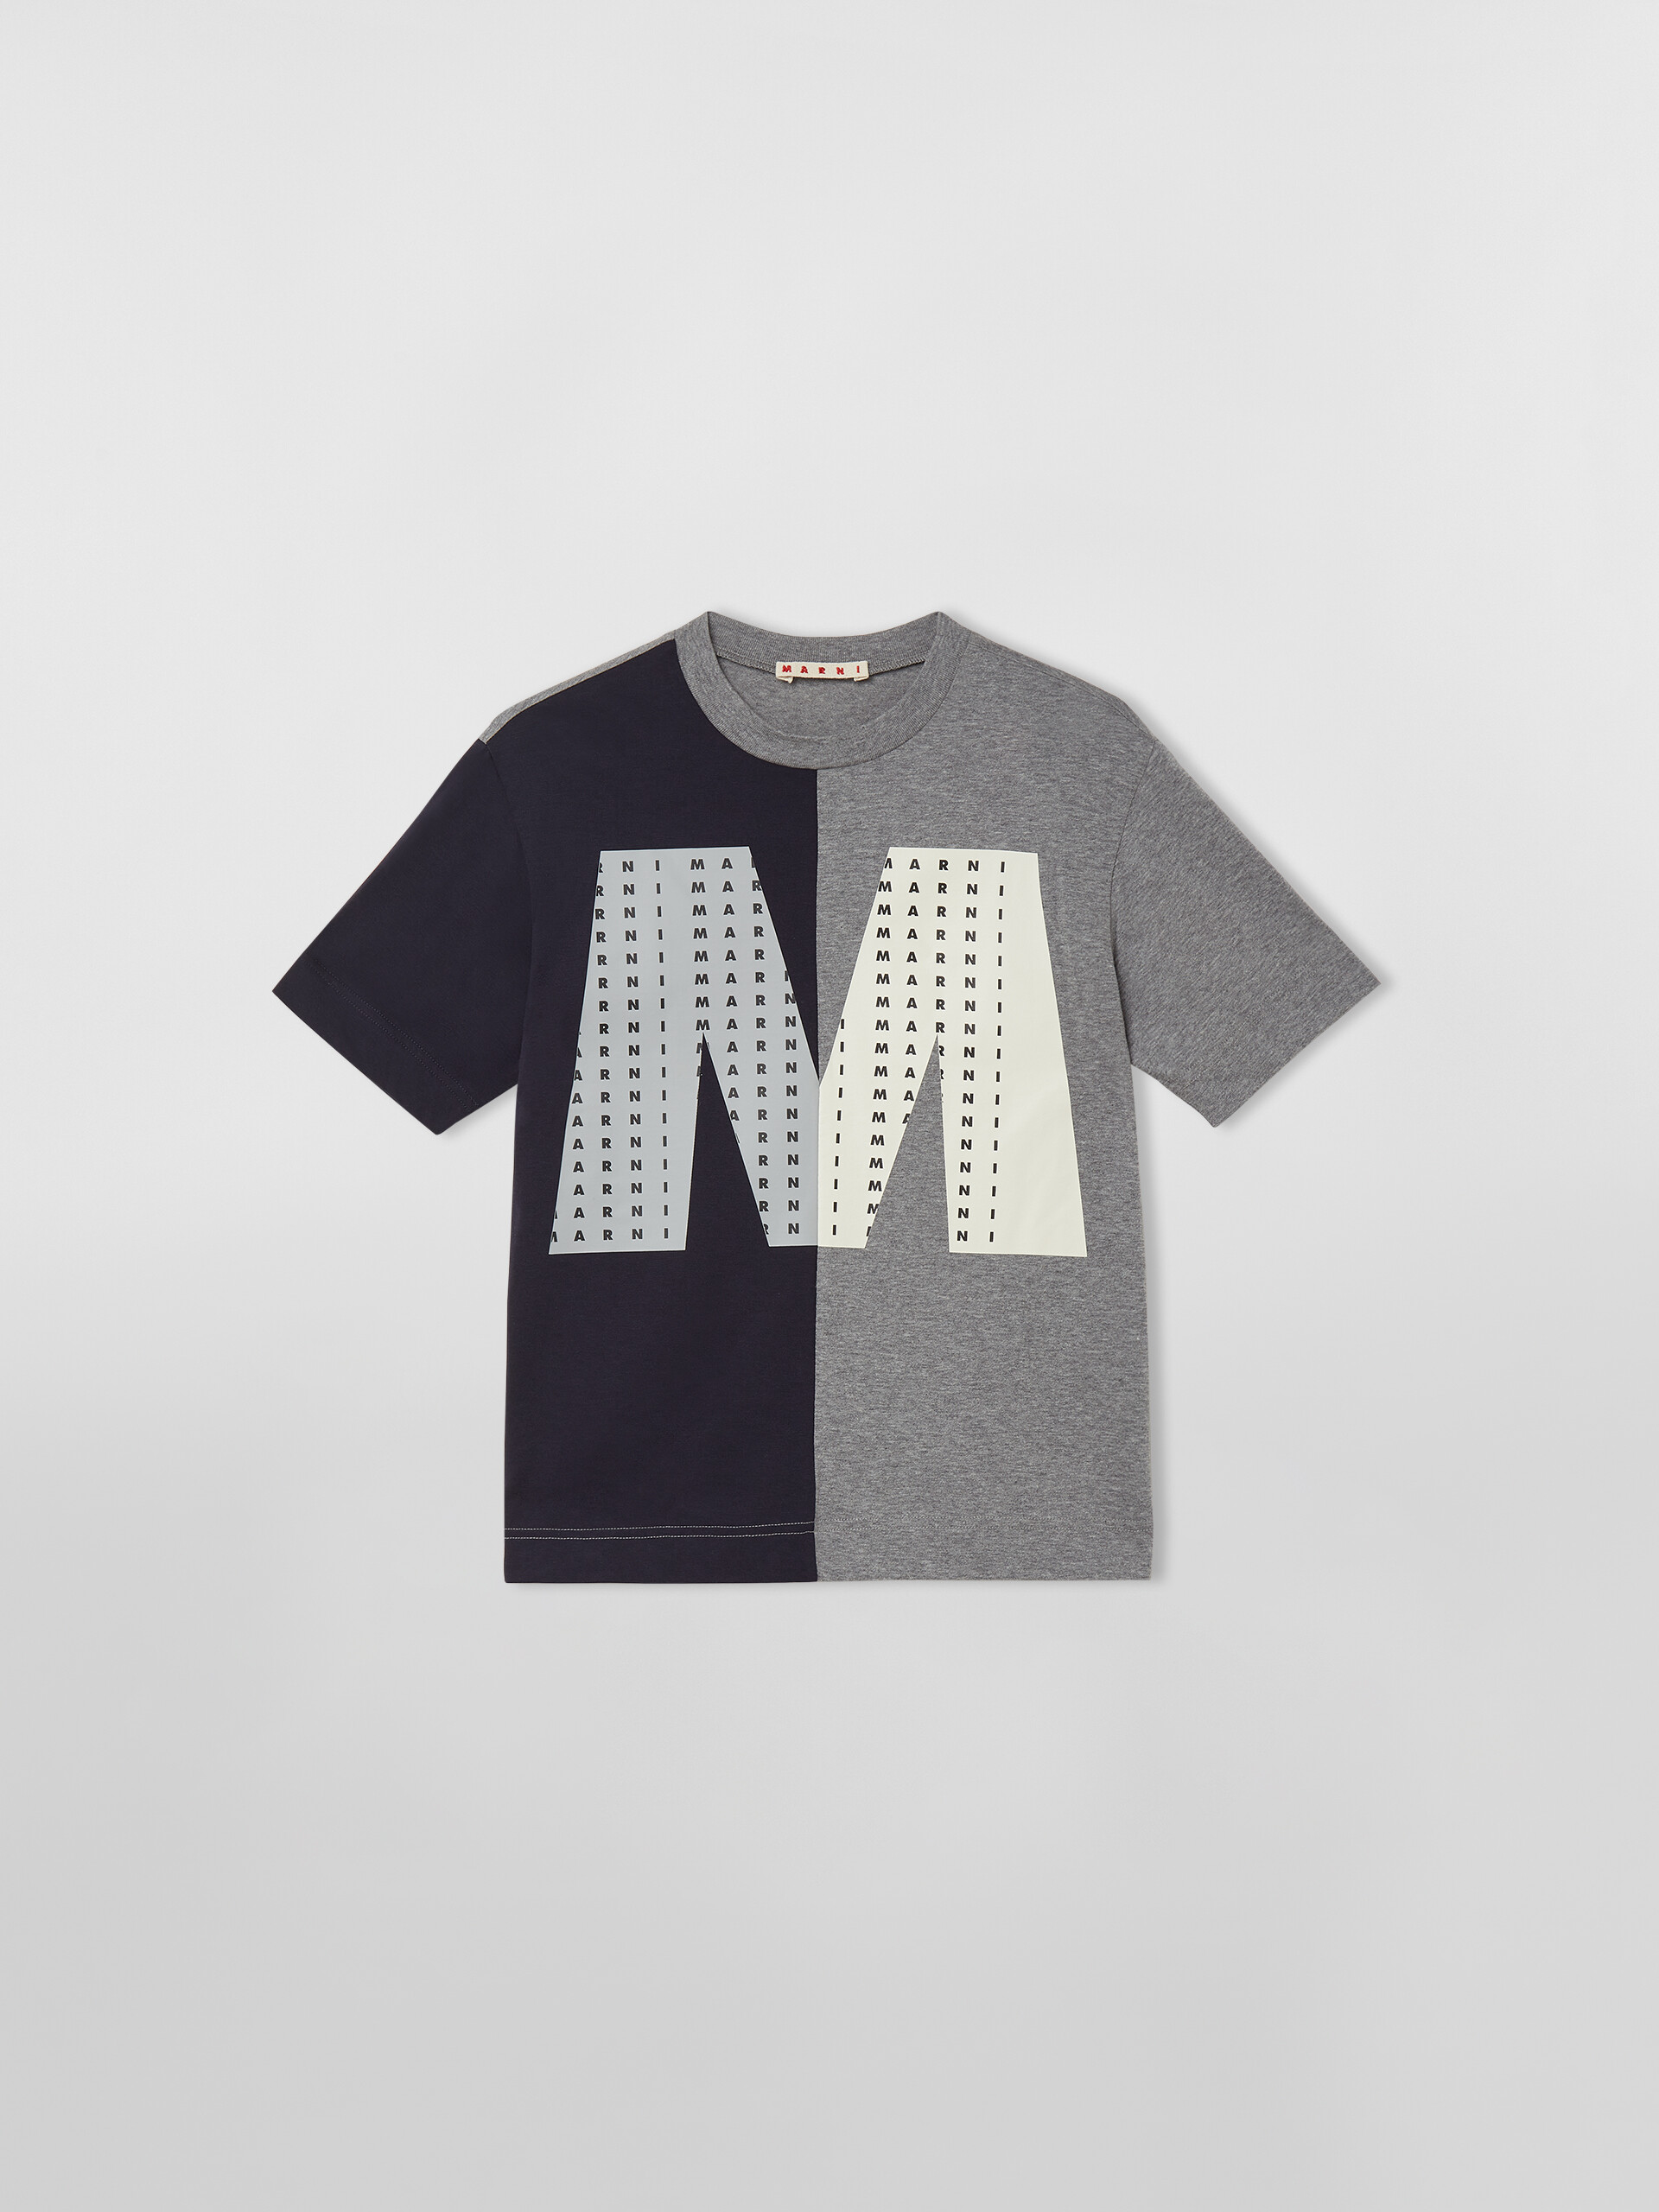 MAGLIETTA BICOLORE CON BIG "M" SUL DAVANTI - T-shirt - Image 1